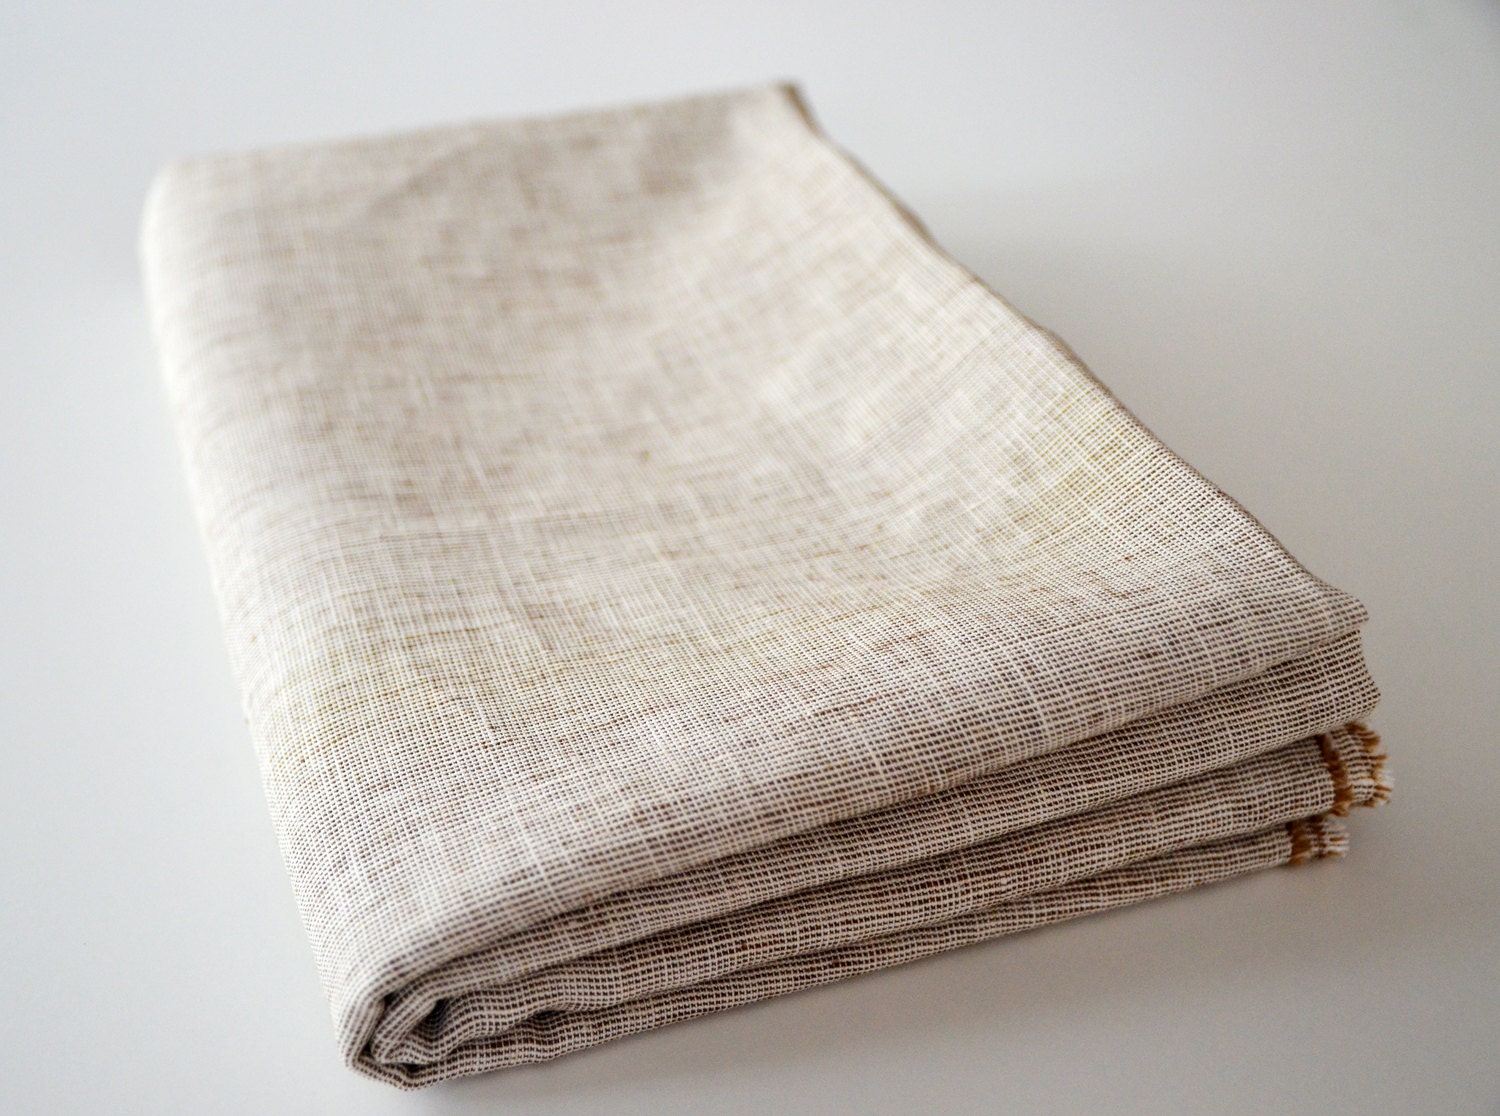 Sukan / Tablecloth - raw linen tablecloth - 59x59 tablecloth - custom order tablecloth - linen fabric - natural linen tablecloth - sukanart